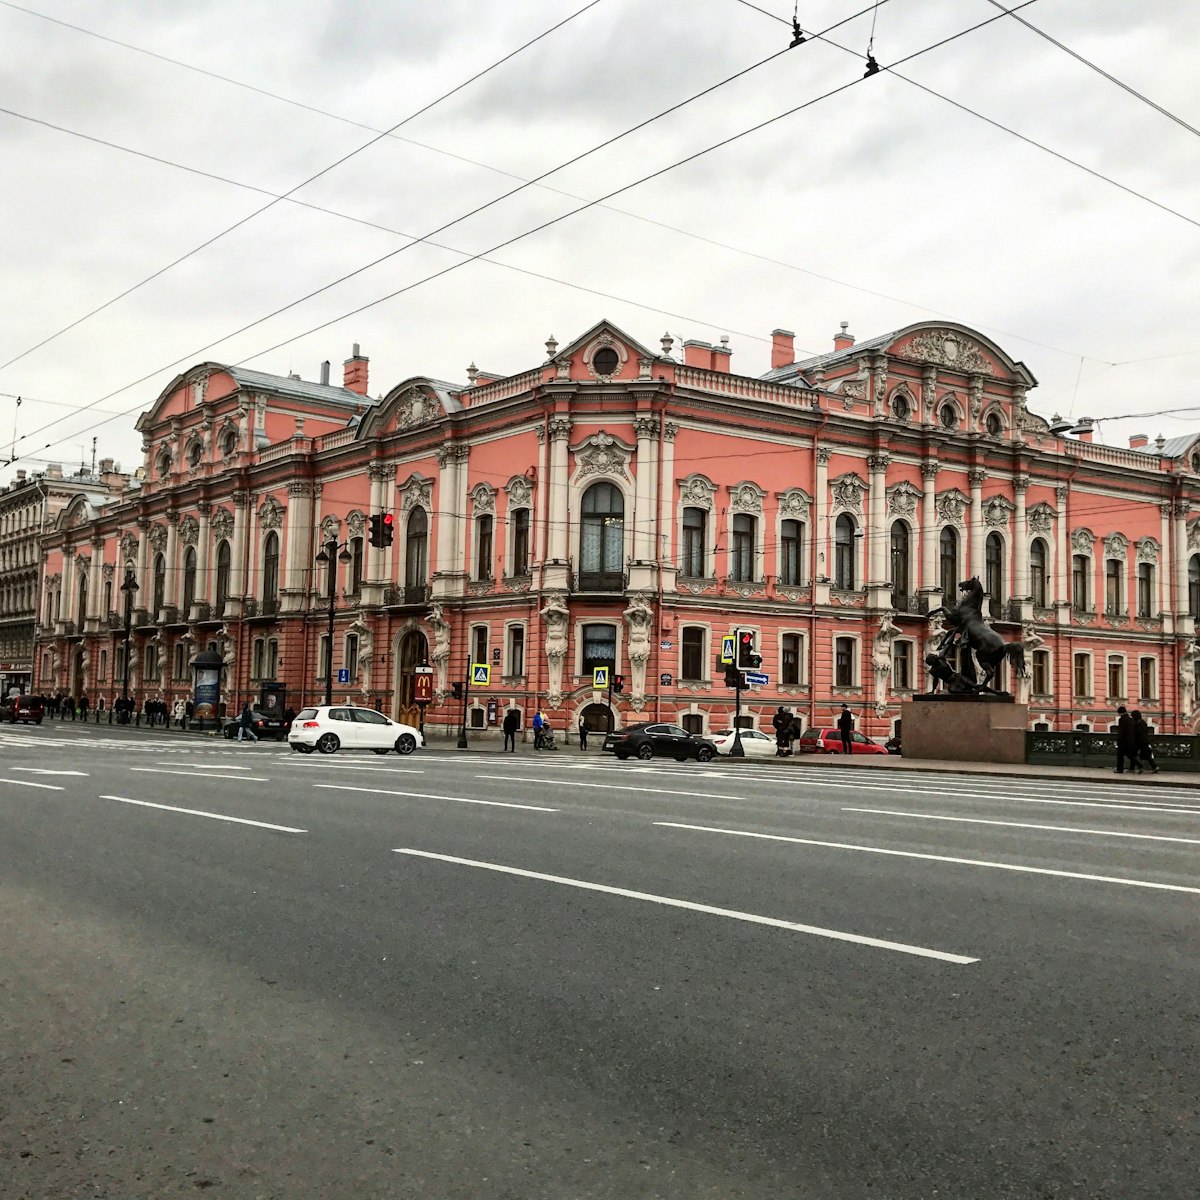 View of St Petersburg's Anichkov Palace from Nevsky Prospekt.